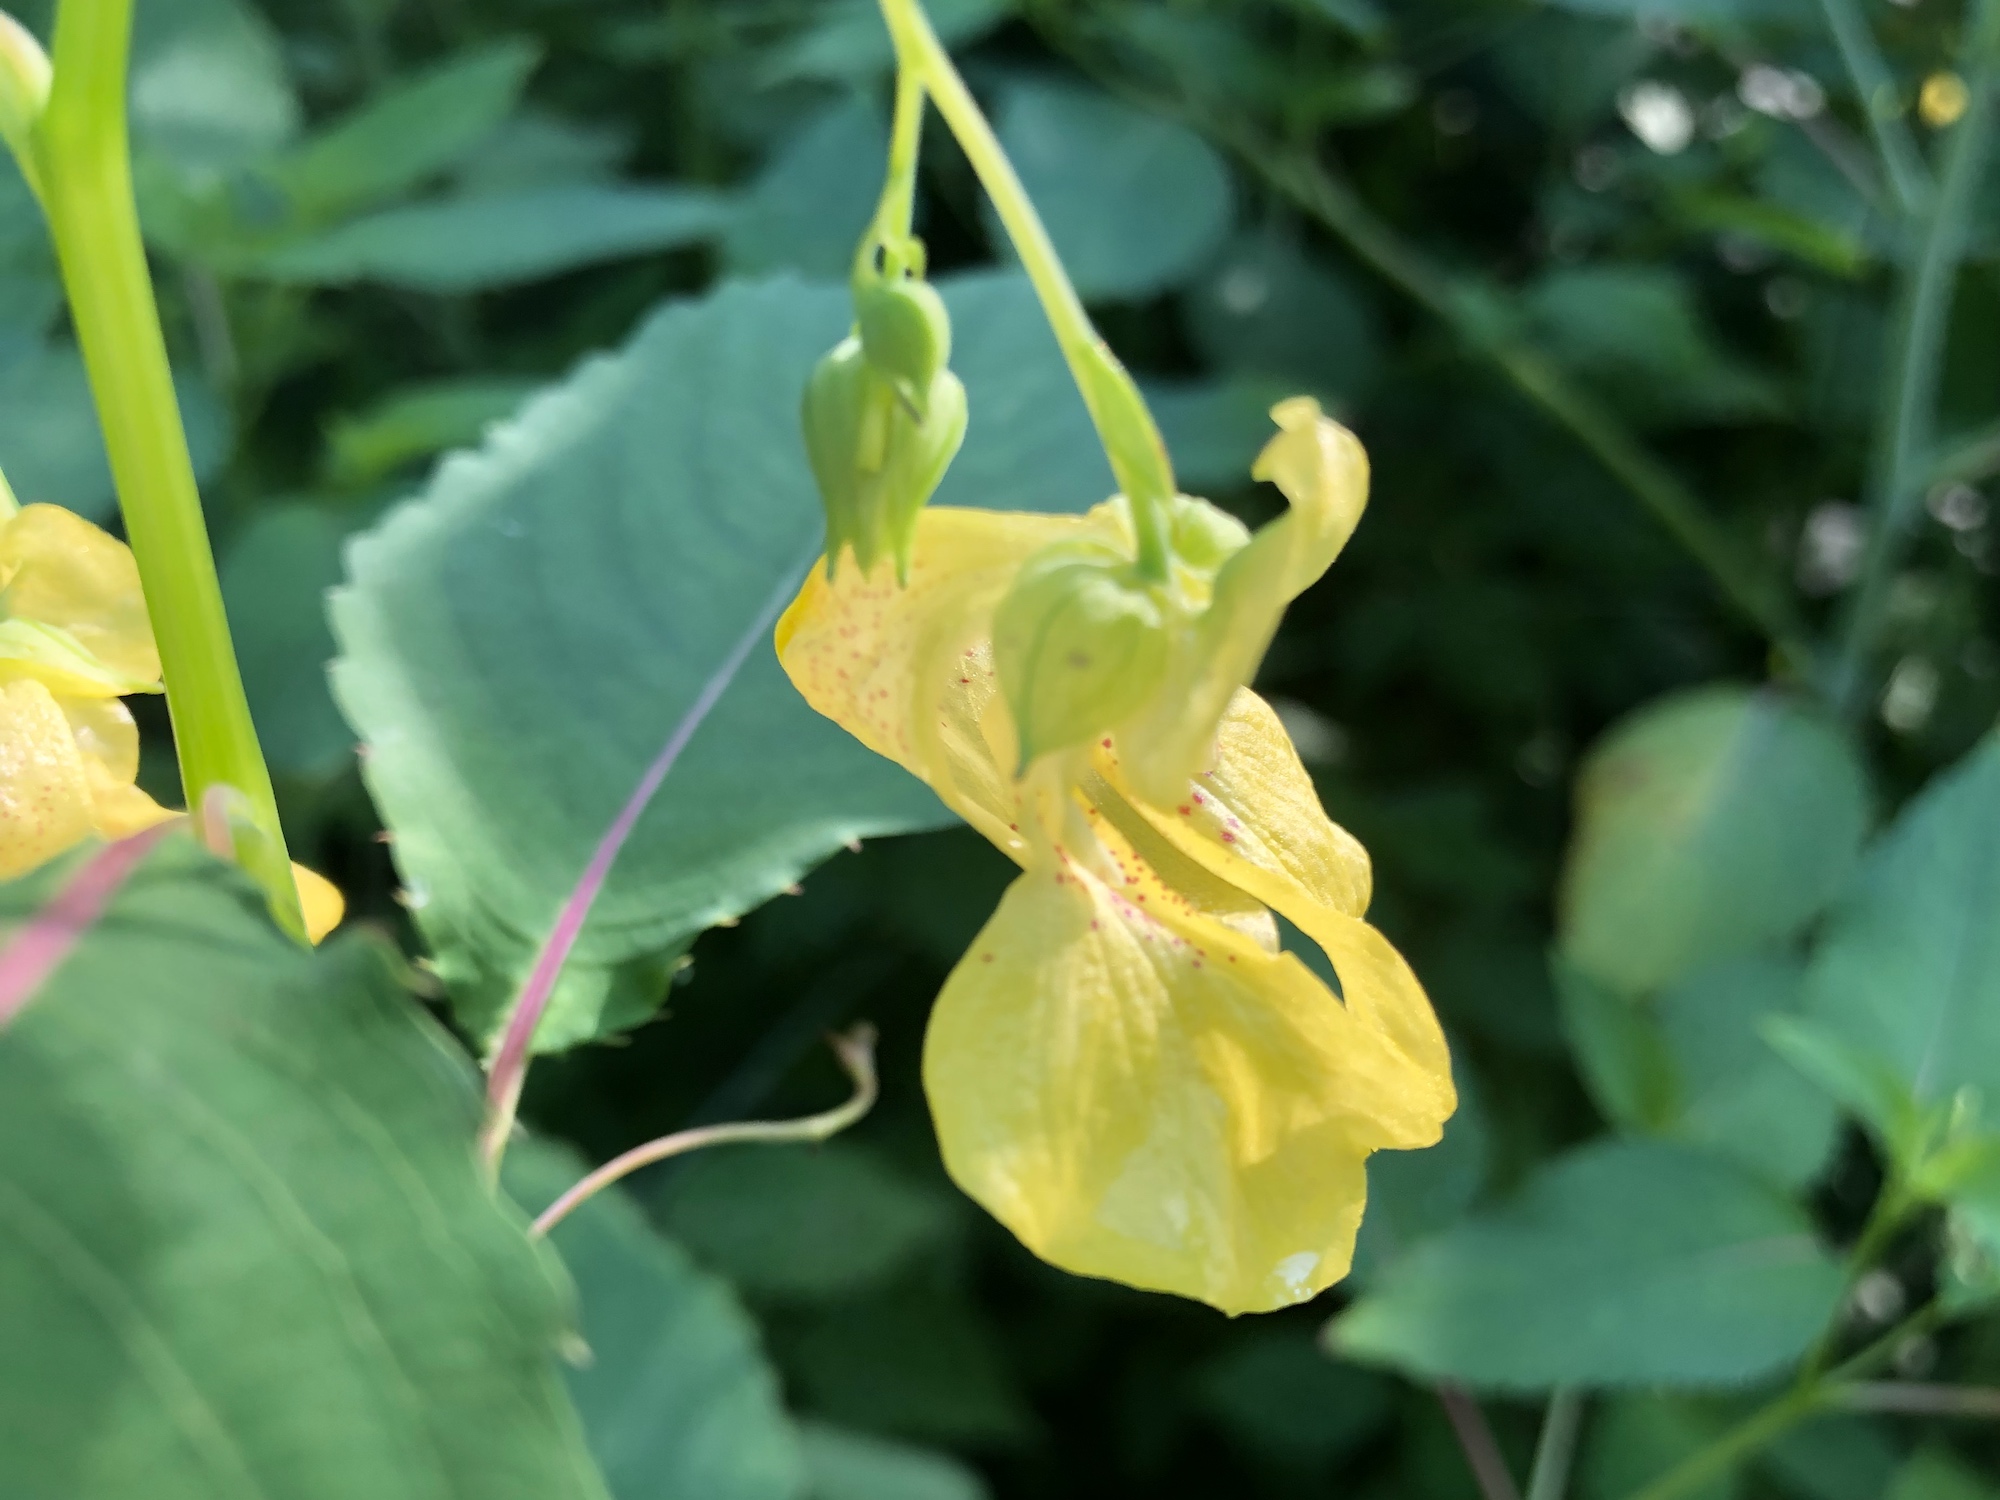 Yellow Jewelweed in the Oak Savanna on July 11, 2019.